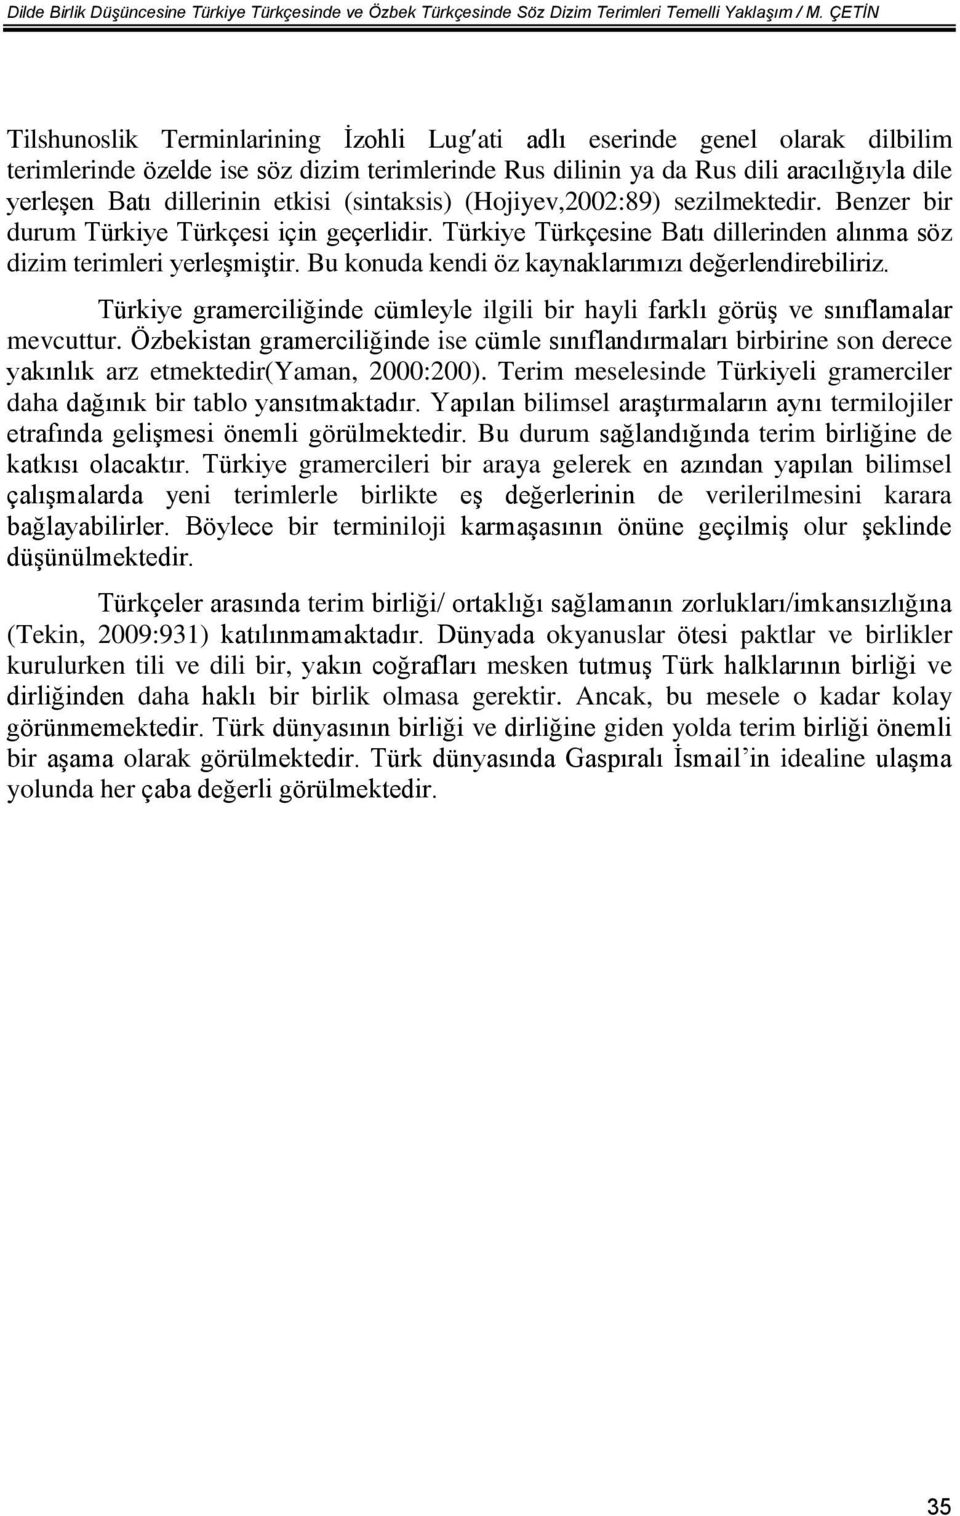 dillerinin etkisi (sintaksis) (Hojiyev,2002:89) sezilmektedir. Benzer bir durum Türkiye Türkçesi için geçerlidir. Türkiye Türkçesine Batı dillerinden alınma söz dizim terimleri yerleşmiştir.